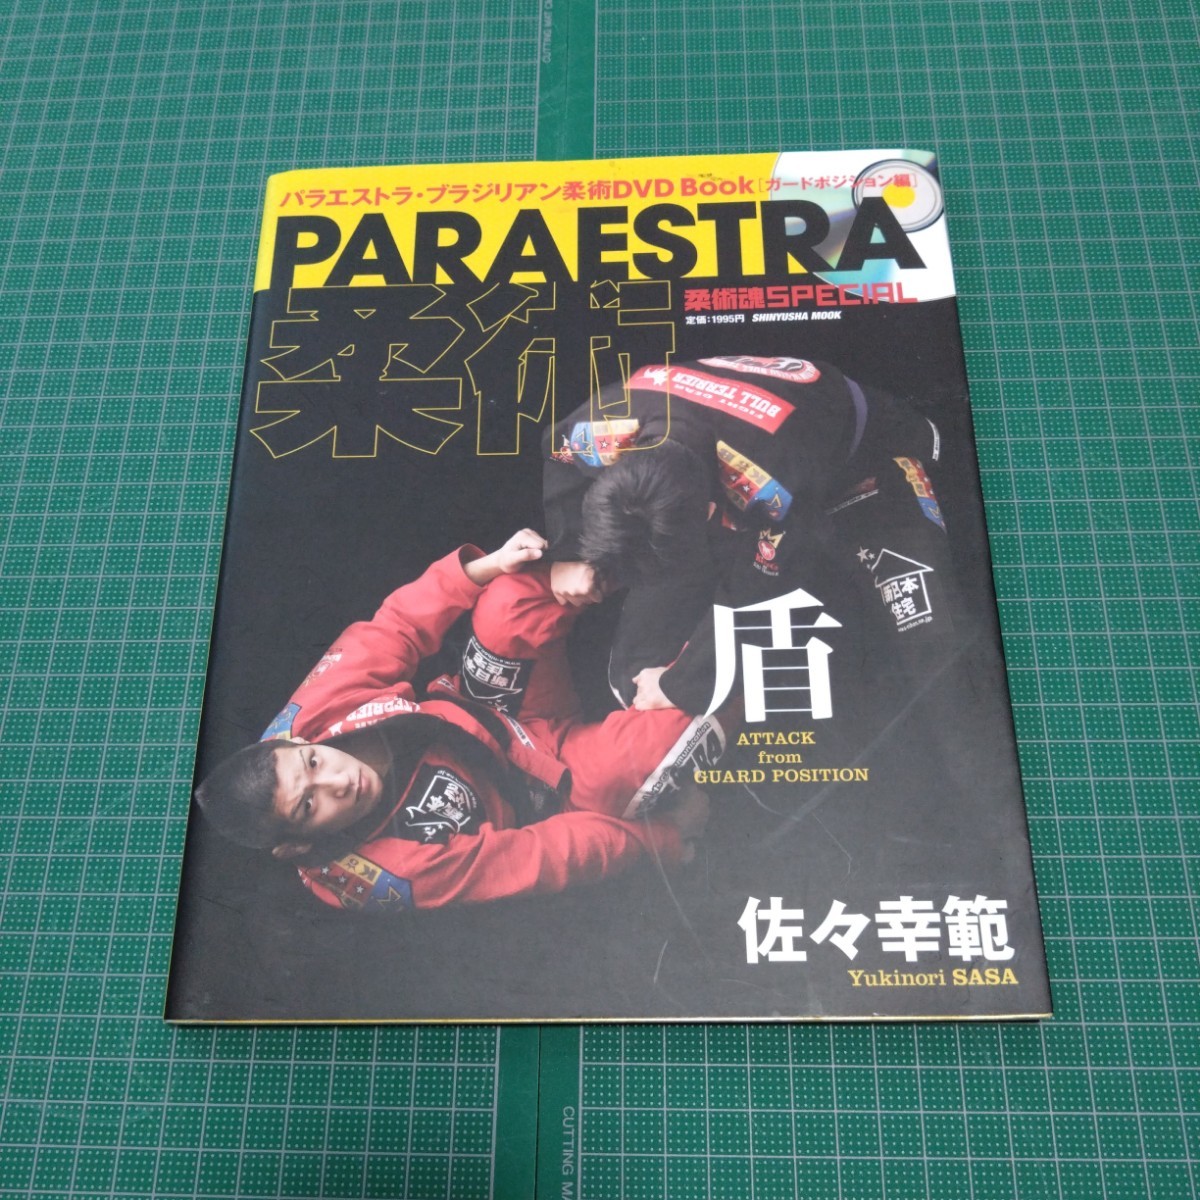 オリジナル  : Paraestra柔術・盾 パラエストラ・ブラジリアン柔術DVD ガードポジション編 book 格闘技一般